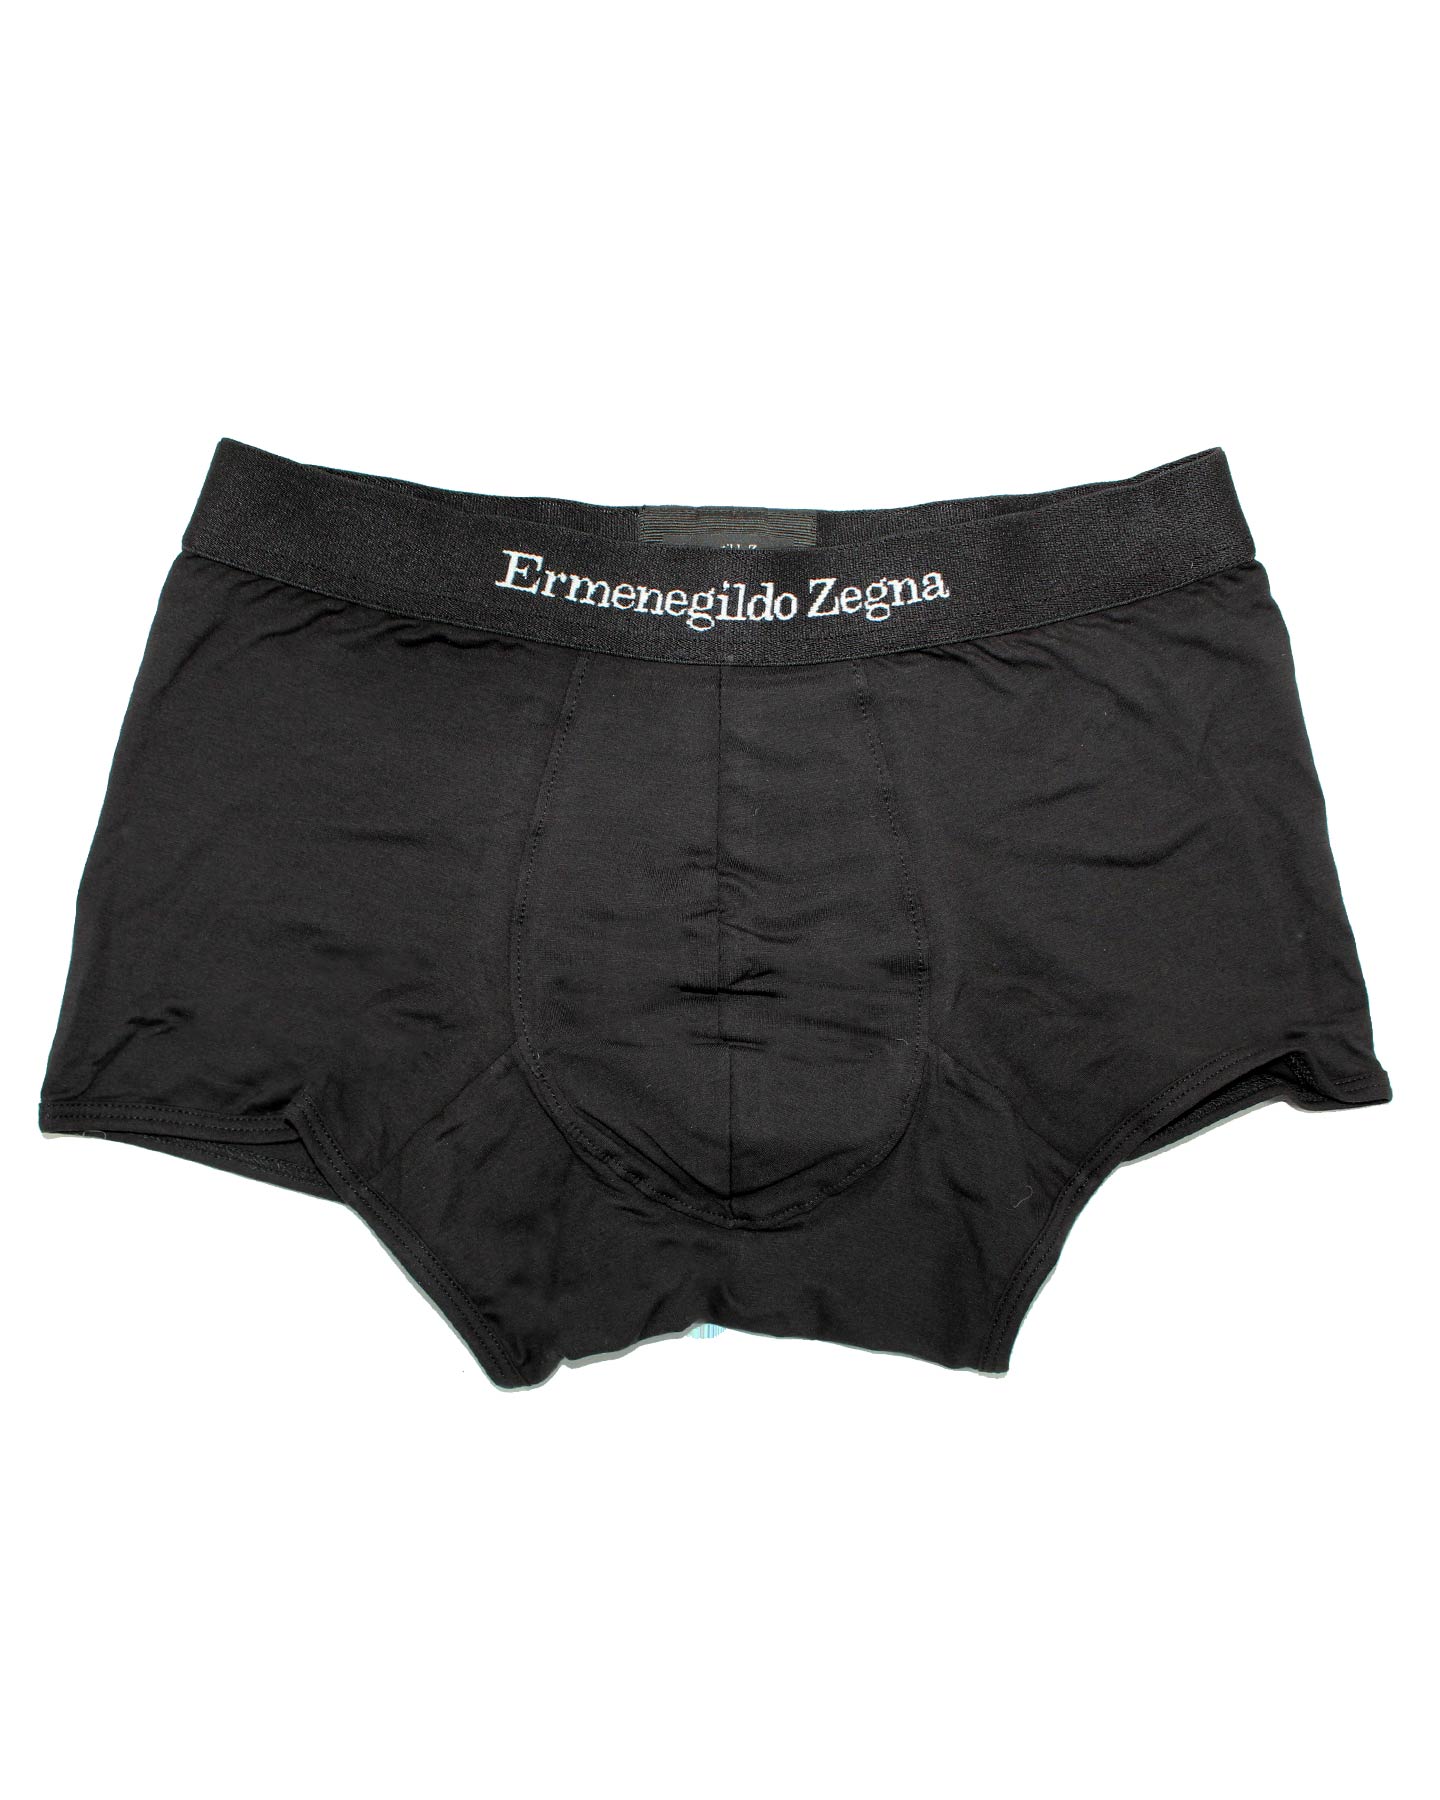 Ermenegildo Zegna Boxer Brief Black Men Underwear Stretch Cotton